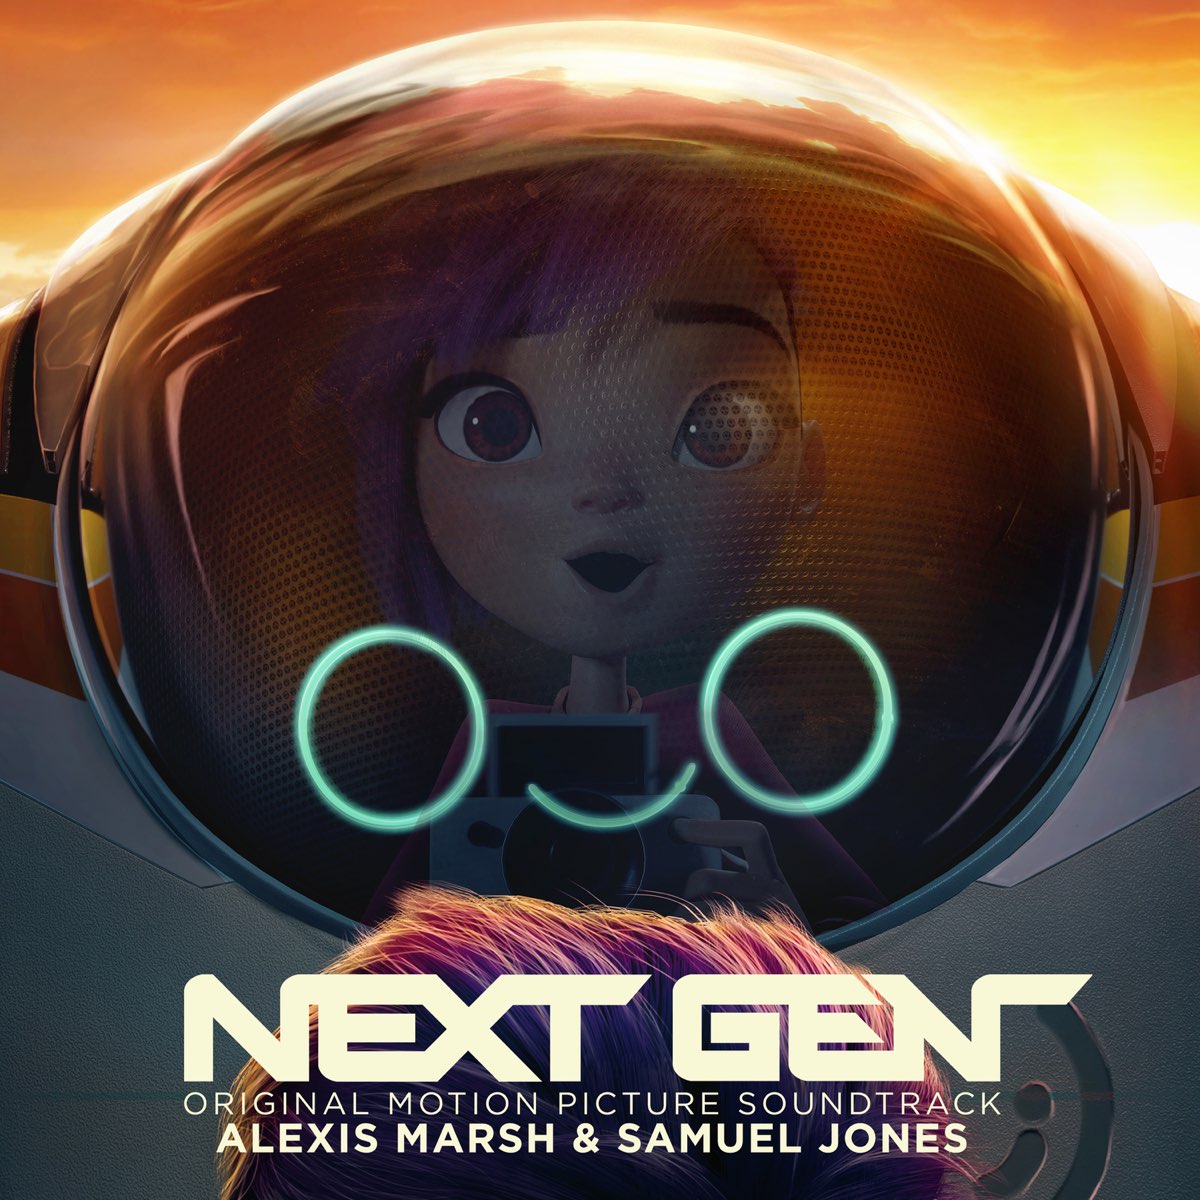 Next Gen (Original Motion Picture Soundtrack) - Album by Alexis